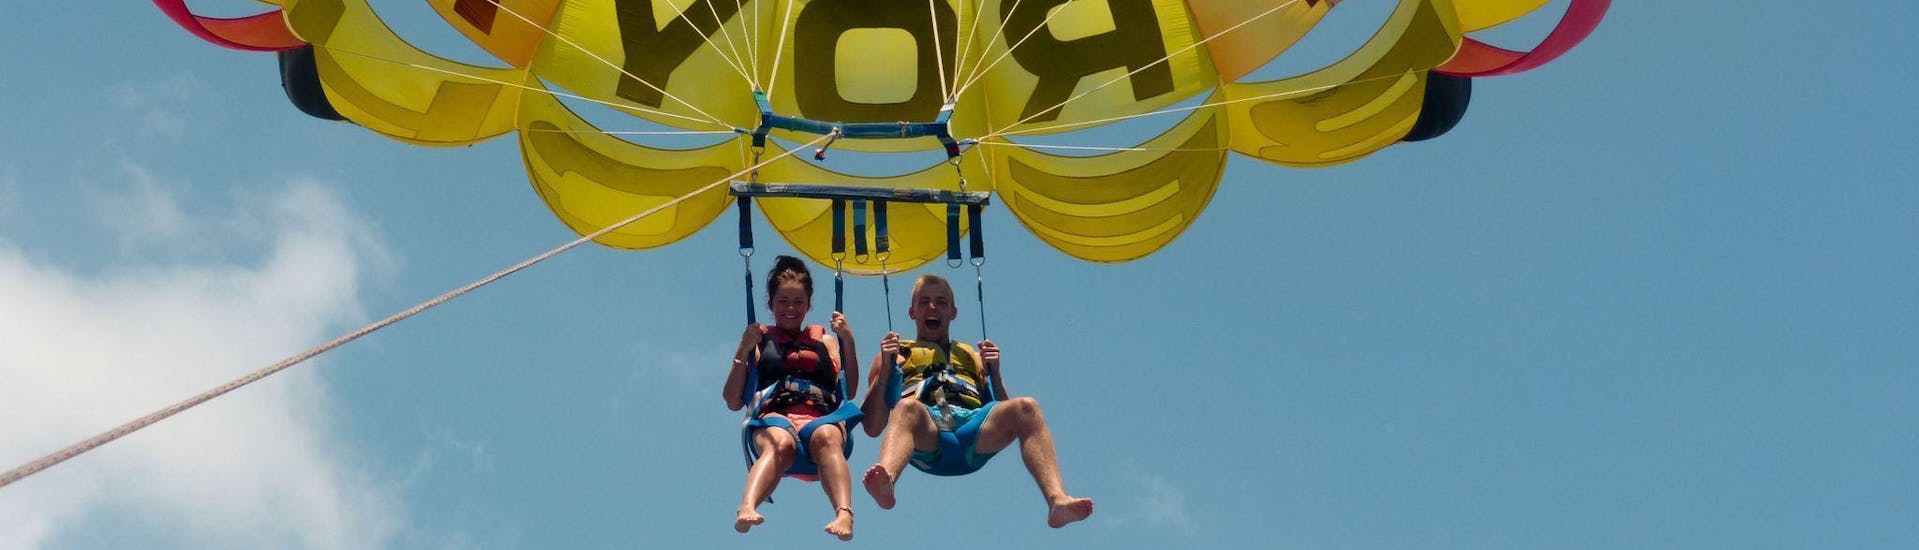 Deux personnes font du parachute ascensionnel à Tenerife avec Watersports Tenerife